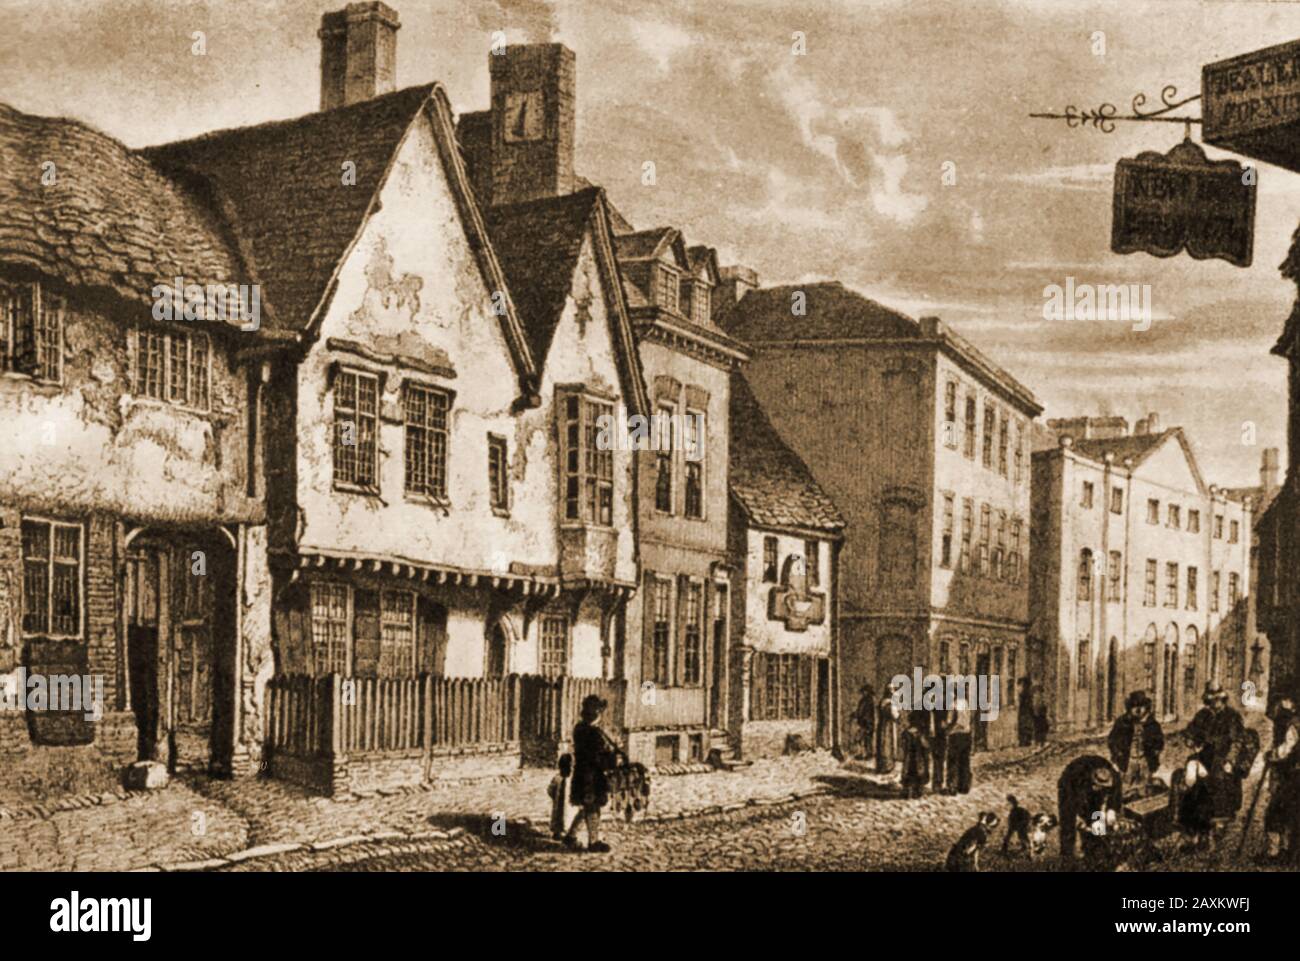 Début des années 1800 - un imprimé historique de South Gate Street, Leicester, Angleterre montrant une maison de café (centre) et le signe New Inn (Droite). En 1840, la ville était reliée à la ligne de chemin de fer Midland Counties et au réseau national. Banque D'Images